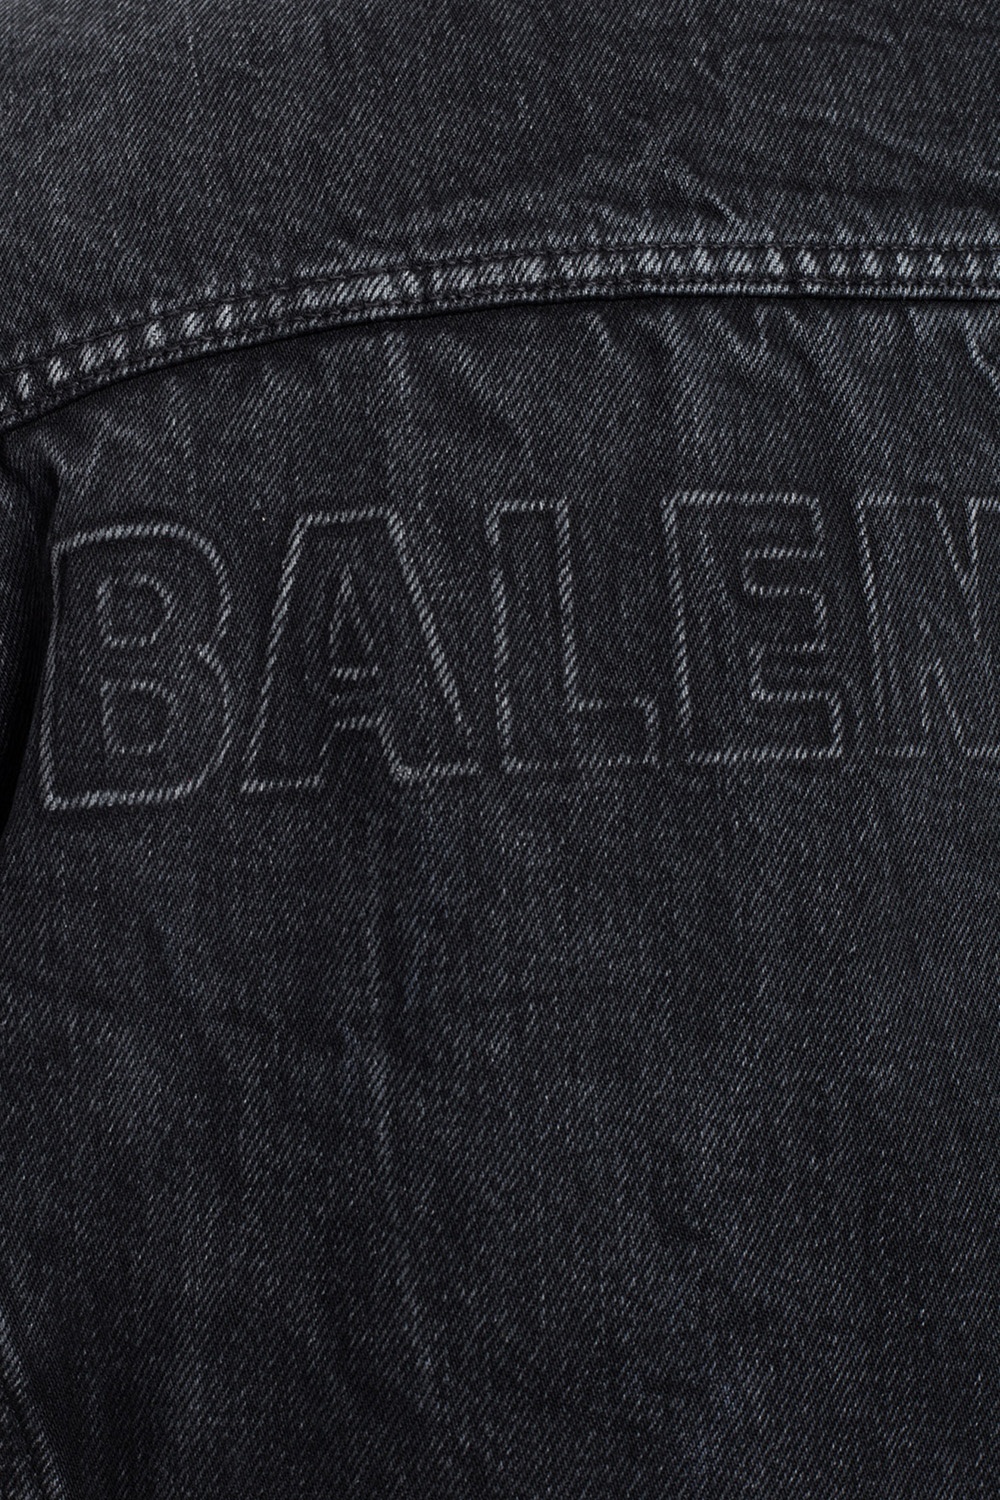 Balenciaga red logo grey denim jacket - BALENCIAGA